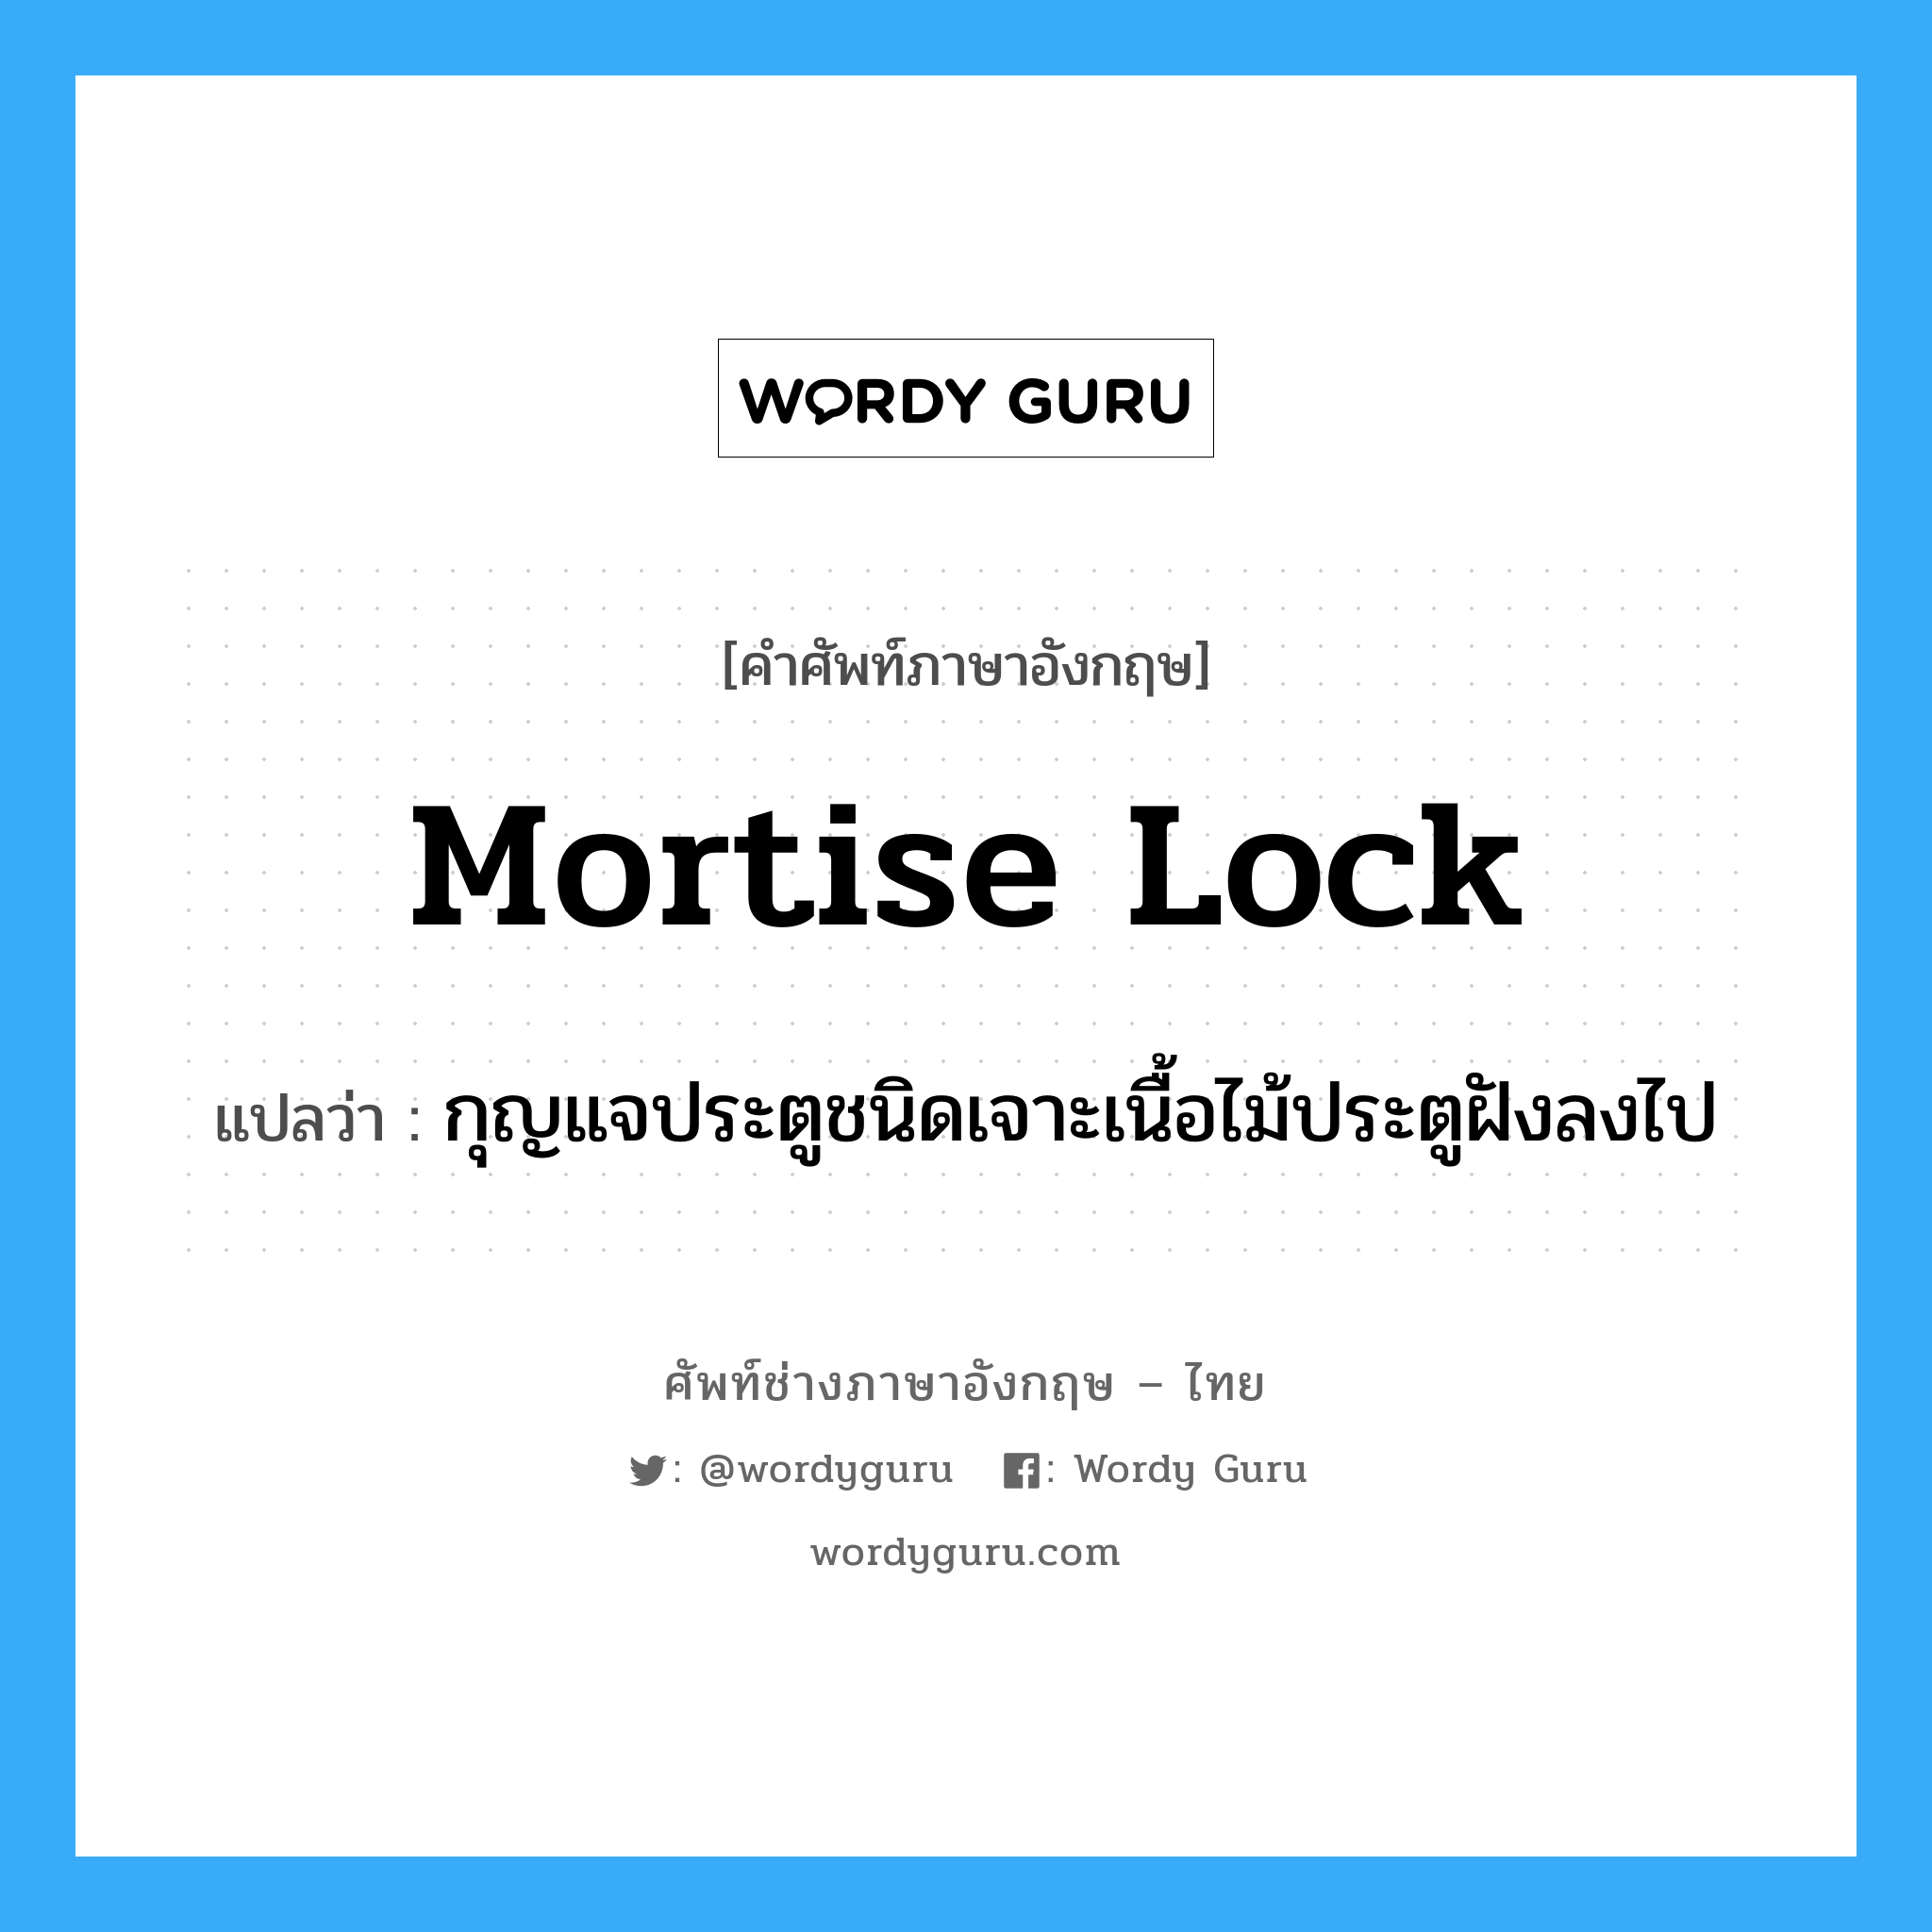 mortise lock แปลว่า?, คำศัพท์ช่างภาษาอังกฤษ - ไทย mortise lock คำศัพท์ภาษาอังกฤษ mortise lock แปลว่า กุญแจประตูชนิดเจาะเนื้อไม้ประตูฝังลงไป